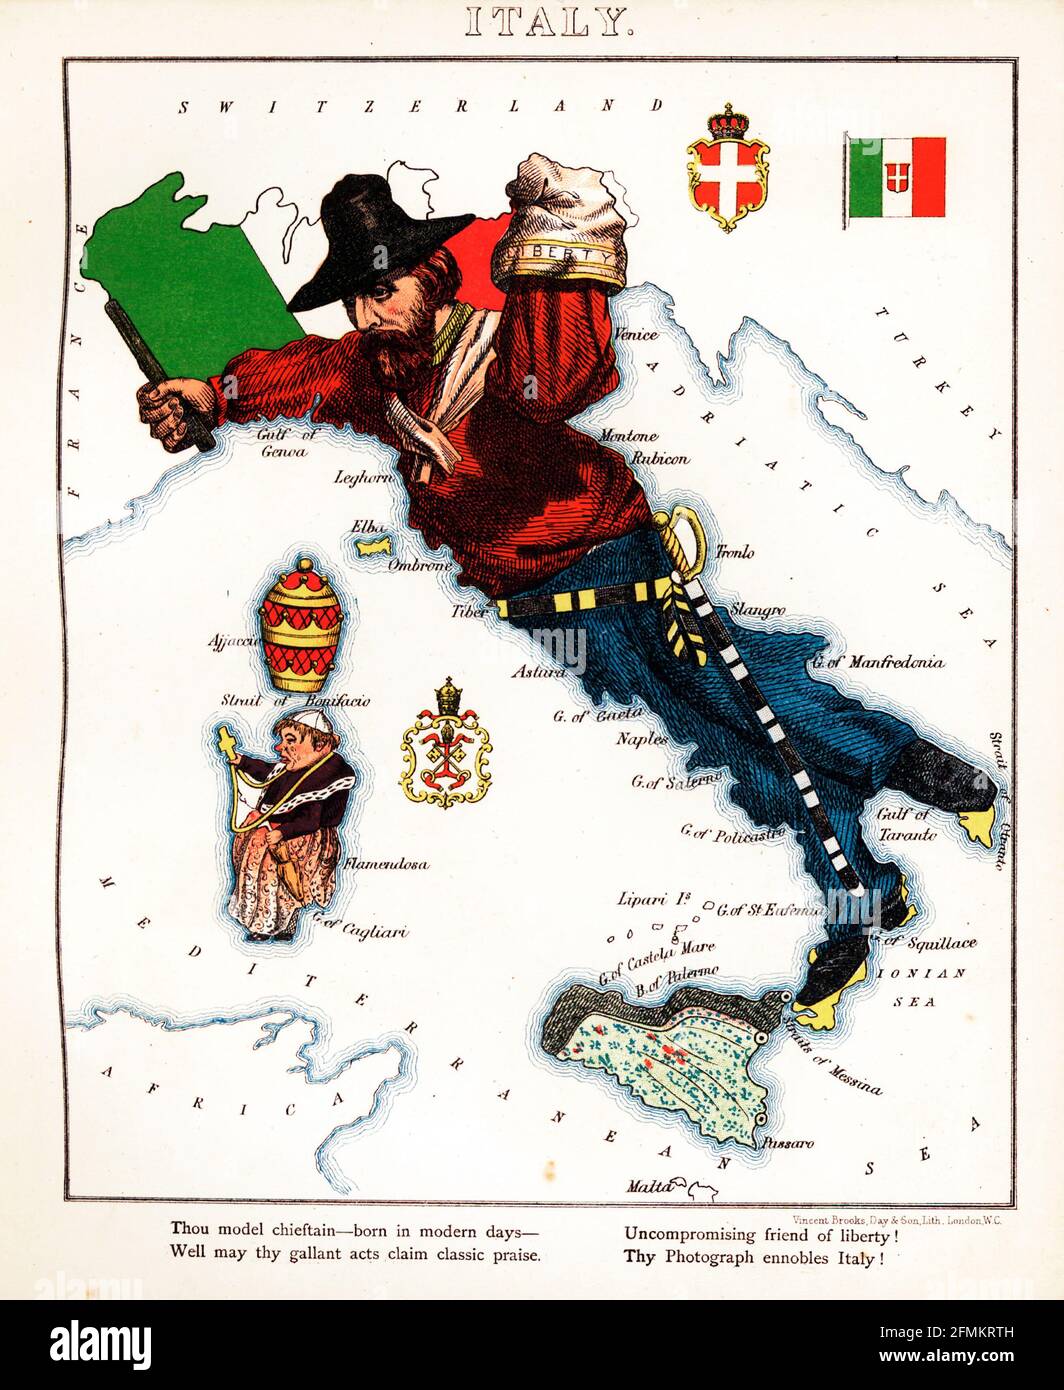 Italien – geografischer Spaß. Illustrierte satirische/kartografische Karte. Veröffentlicht in London von der Firma Hodder und Stoughton im Jahr 1869. Stockfoto